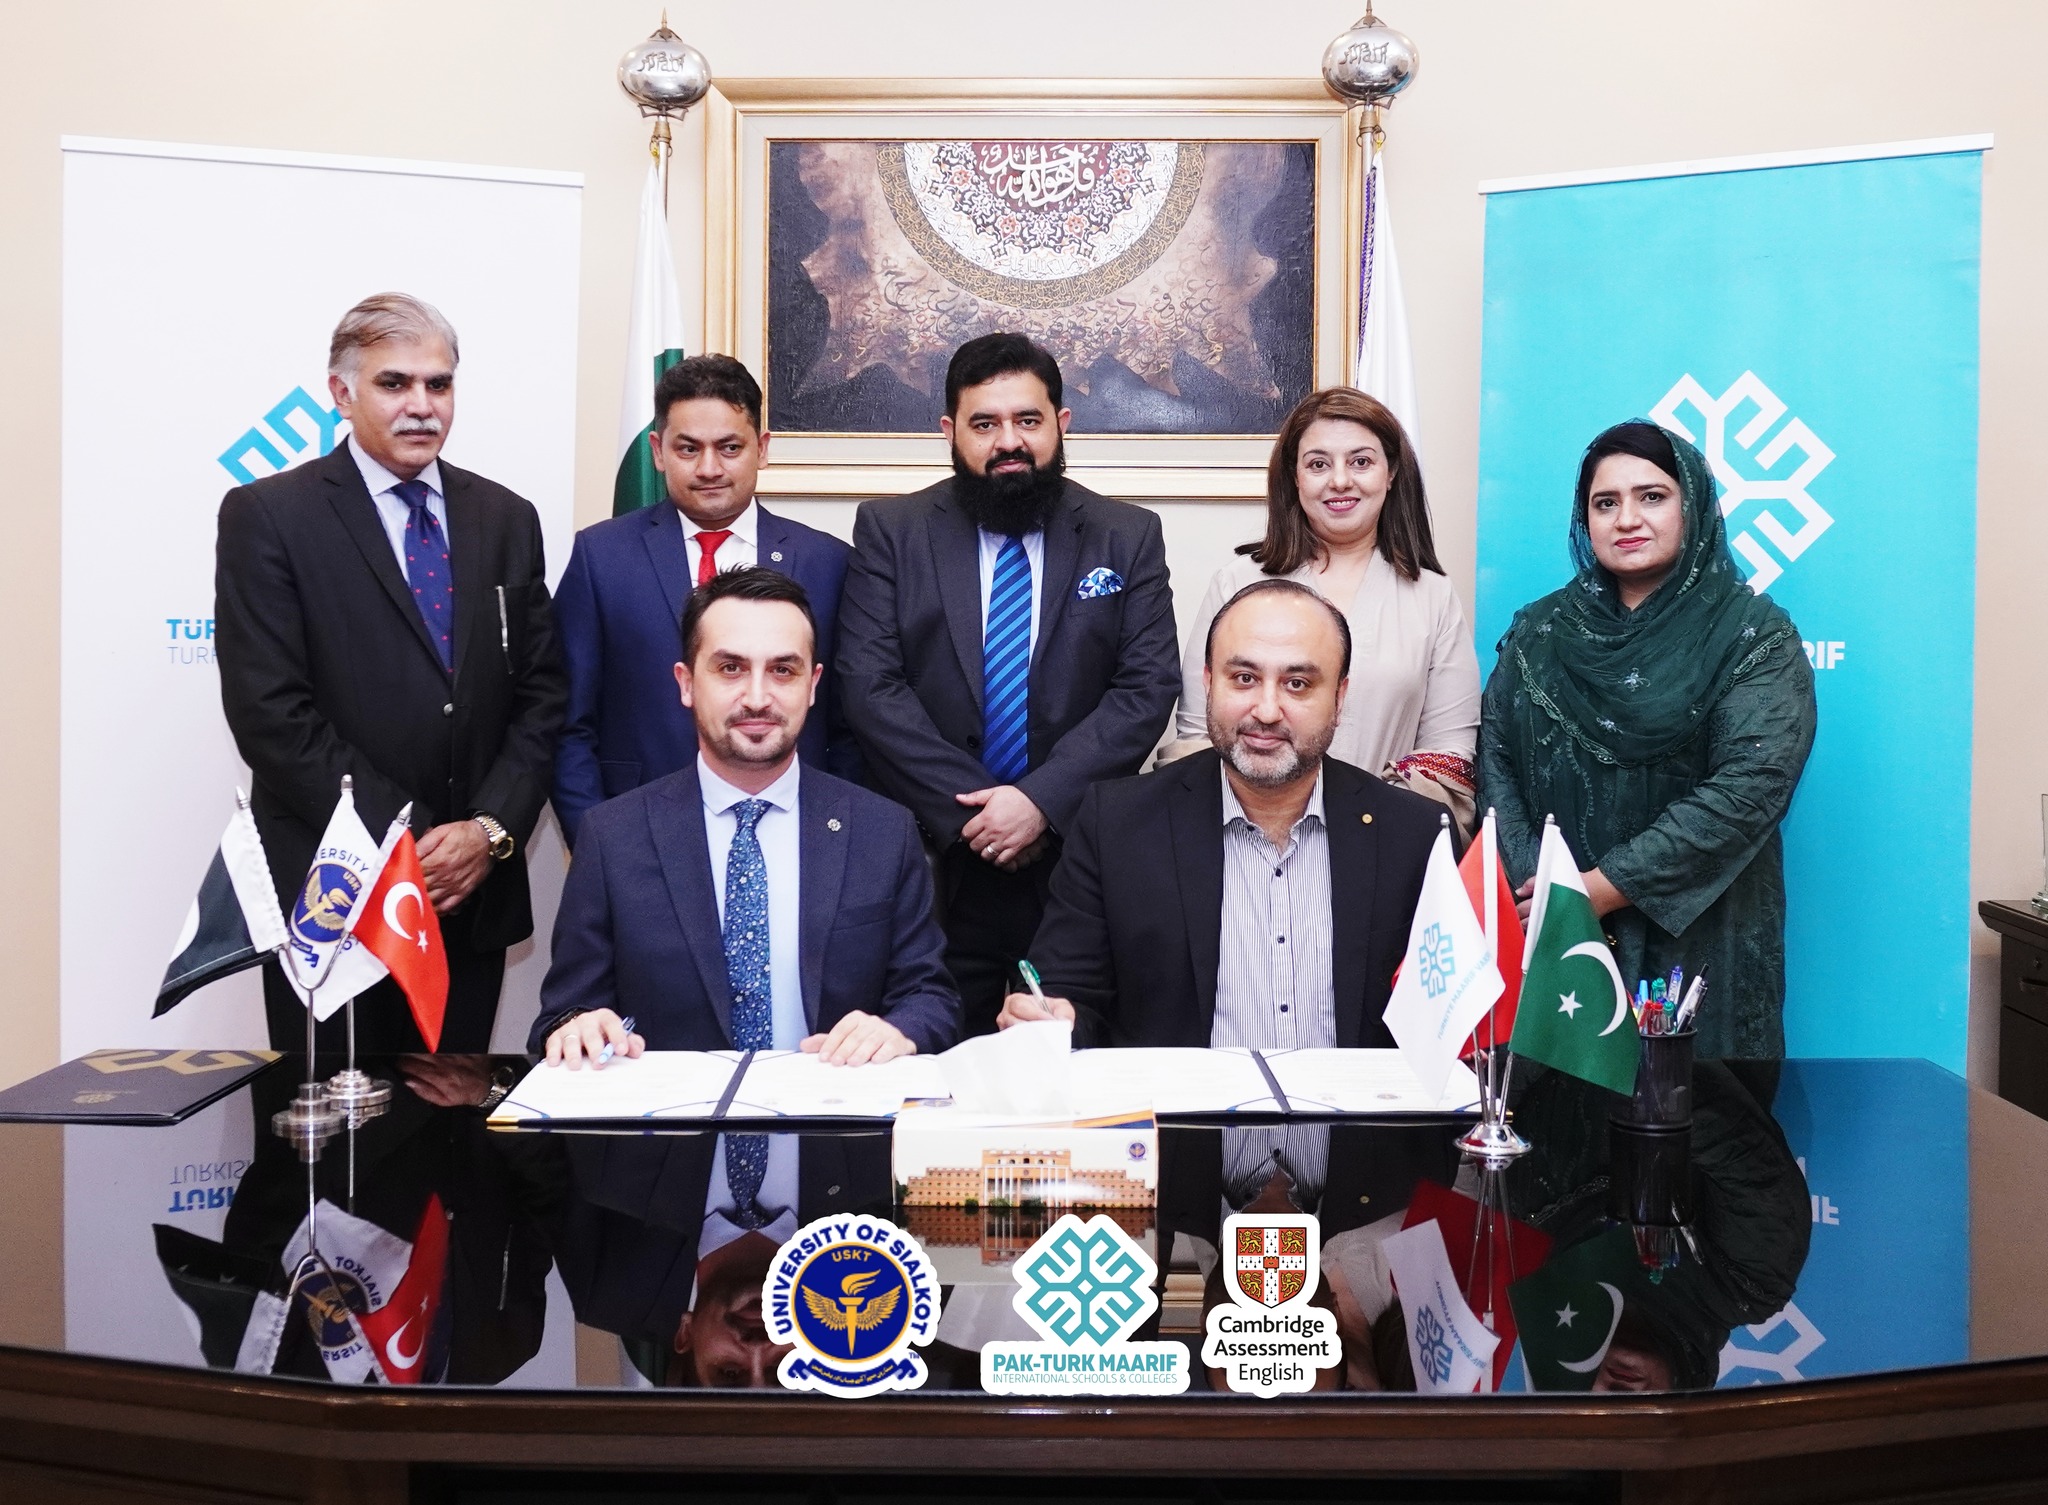 MOU has been signed between USKT and PakTurk Maarif 